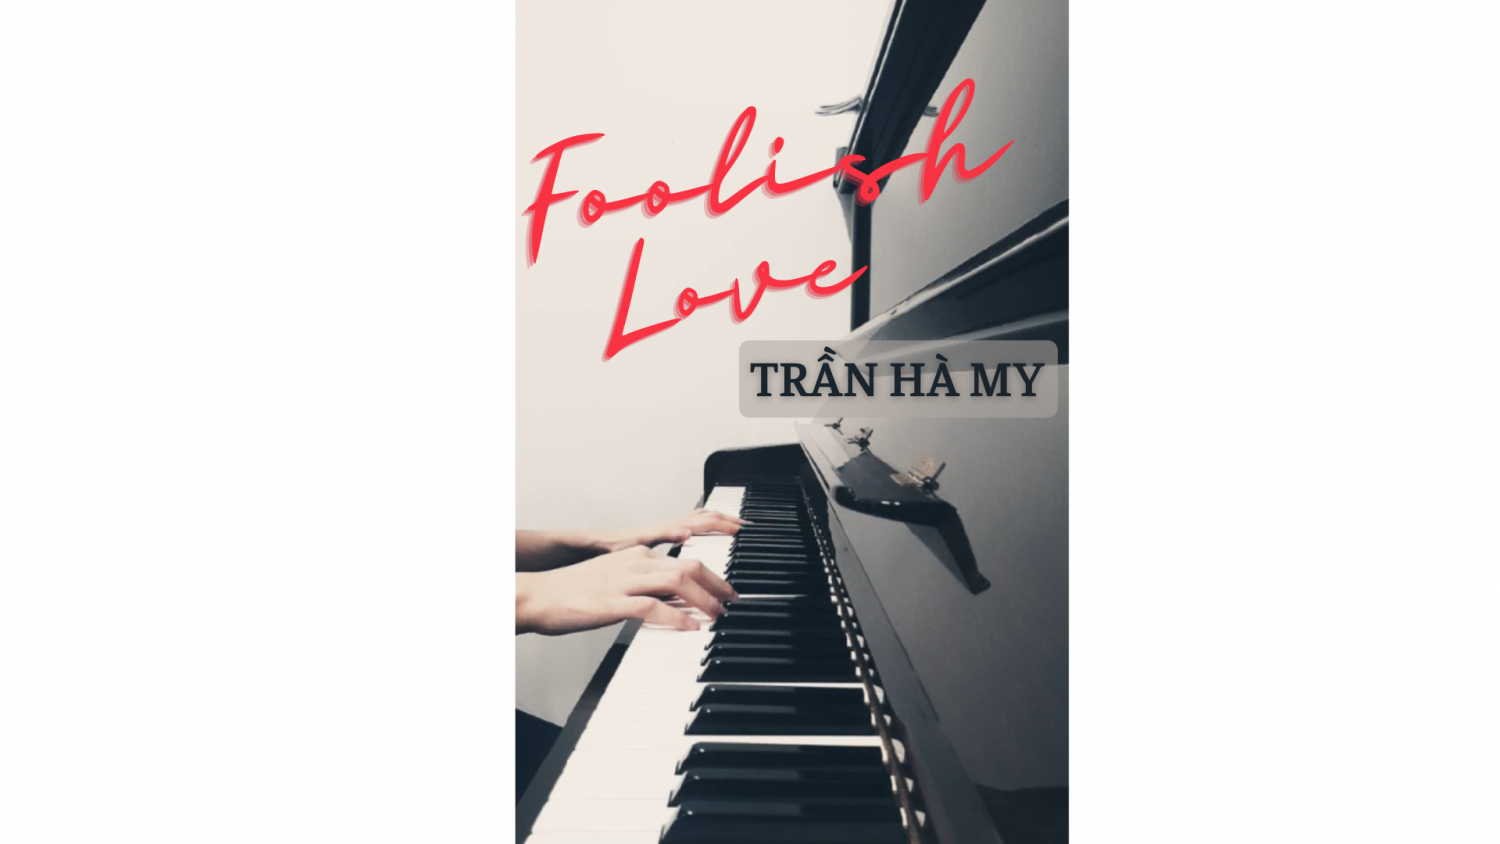 Bài hát Foolish Love phiên bản piano qua phần trình bày của bạn Trần Hà My